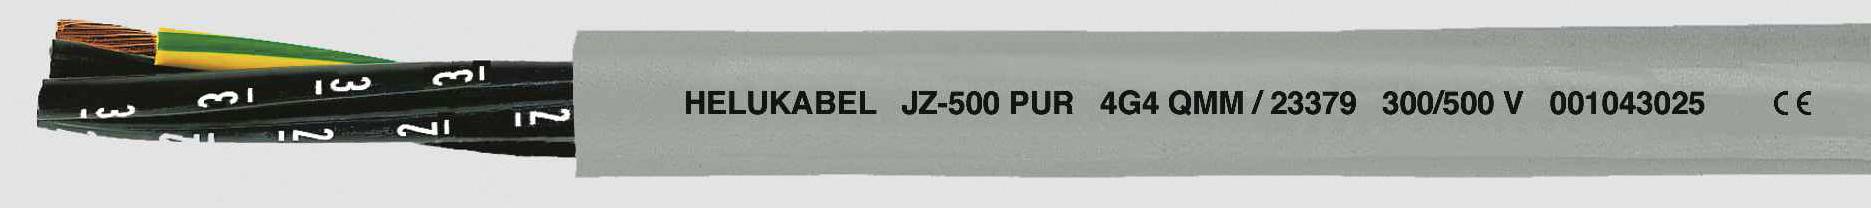 HELUKABEL JZ-500 PUR Steuerleitung 4 G 0.75 mm² Grau 23332-1000 1000 m